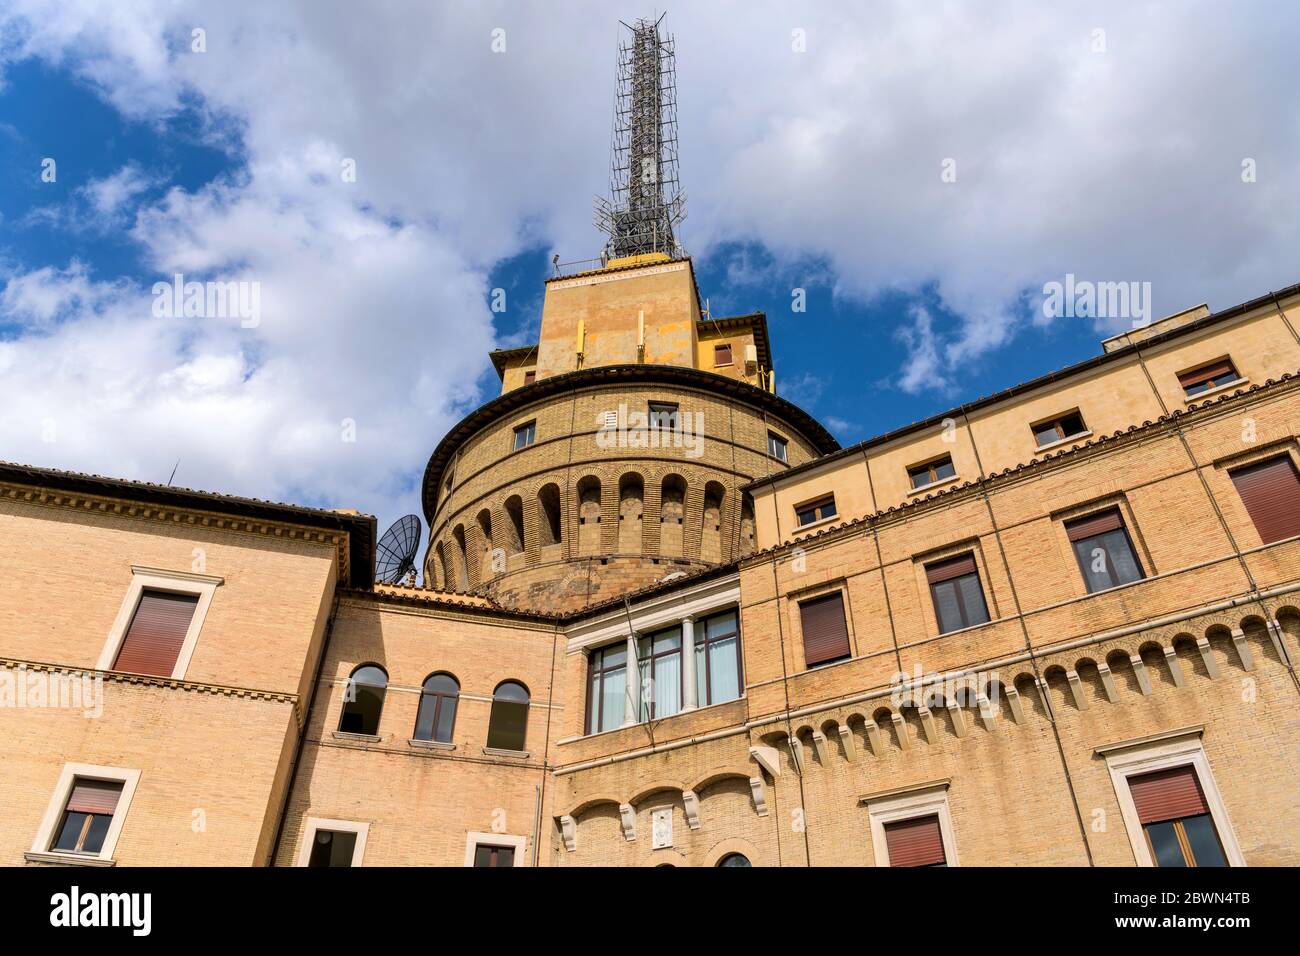 Tour de radio du Vatican - vue rapprochée à angle bas du bâtiment de radio du Vatican et de ses grands mâts de radio, contre les nuages blancs et le ciel bleu, Cité du Vatican, Rome. Banque D'Images